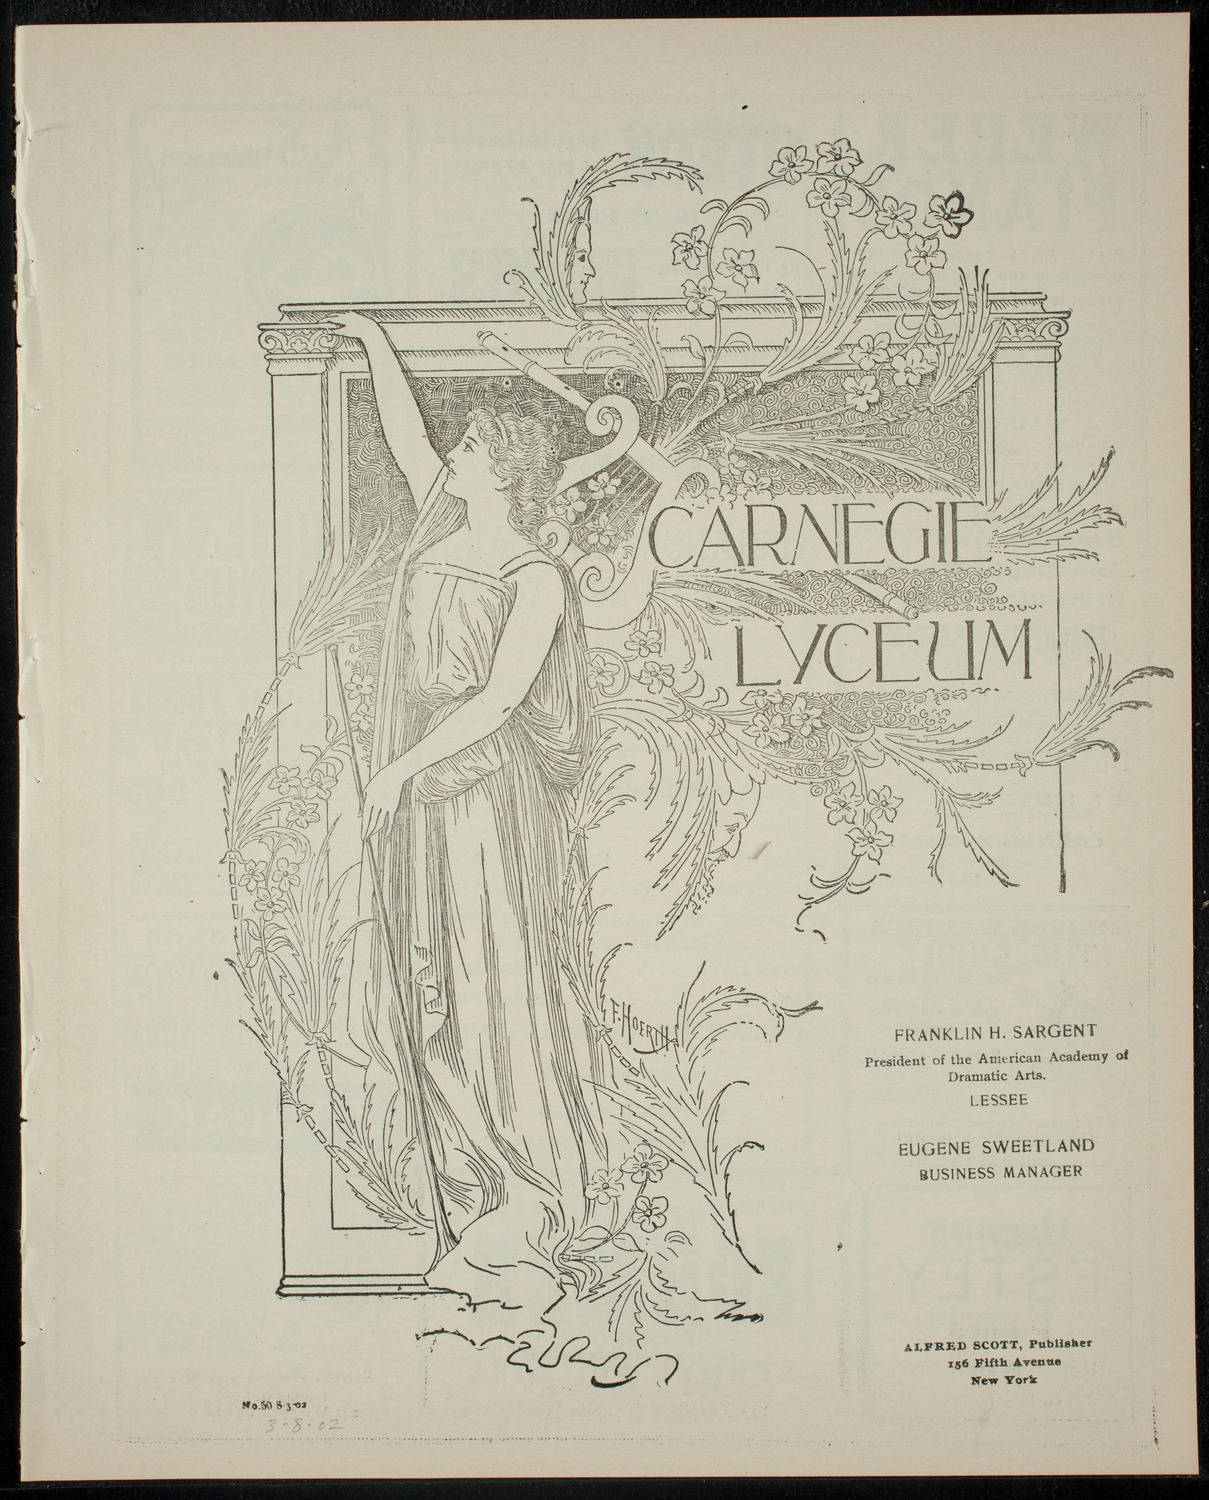 Soirée by the Alliance Française, Comité de New York, March 8, 1902, program page 1